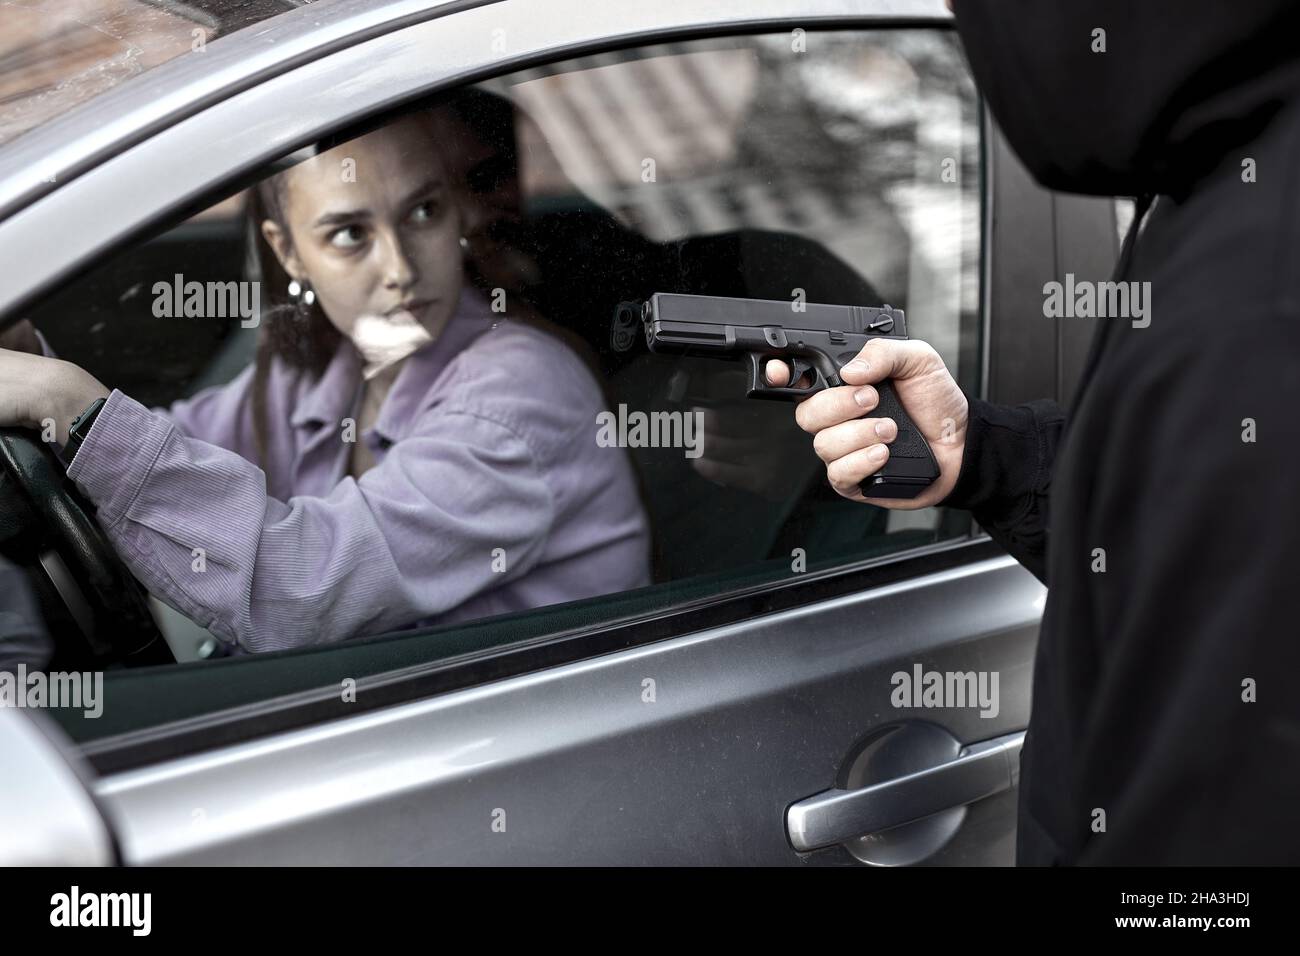 Bandit Mann Räuber hält Handfeuerwaffe Gangster zu entführen Geisel Frau Fahrer Auto schockiert und gefährlich auf Straße Gewalt Konzept. Seitenansicht auf Fr. Stockfoto